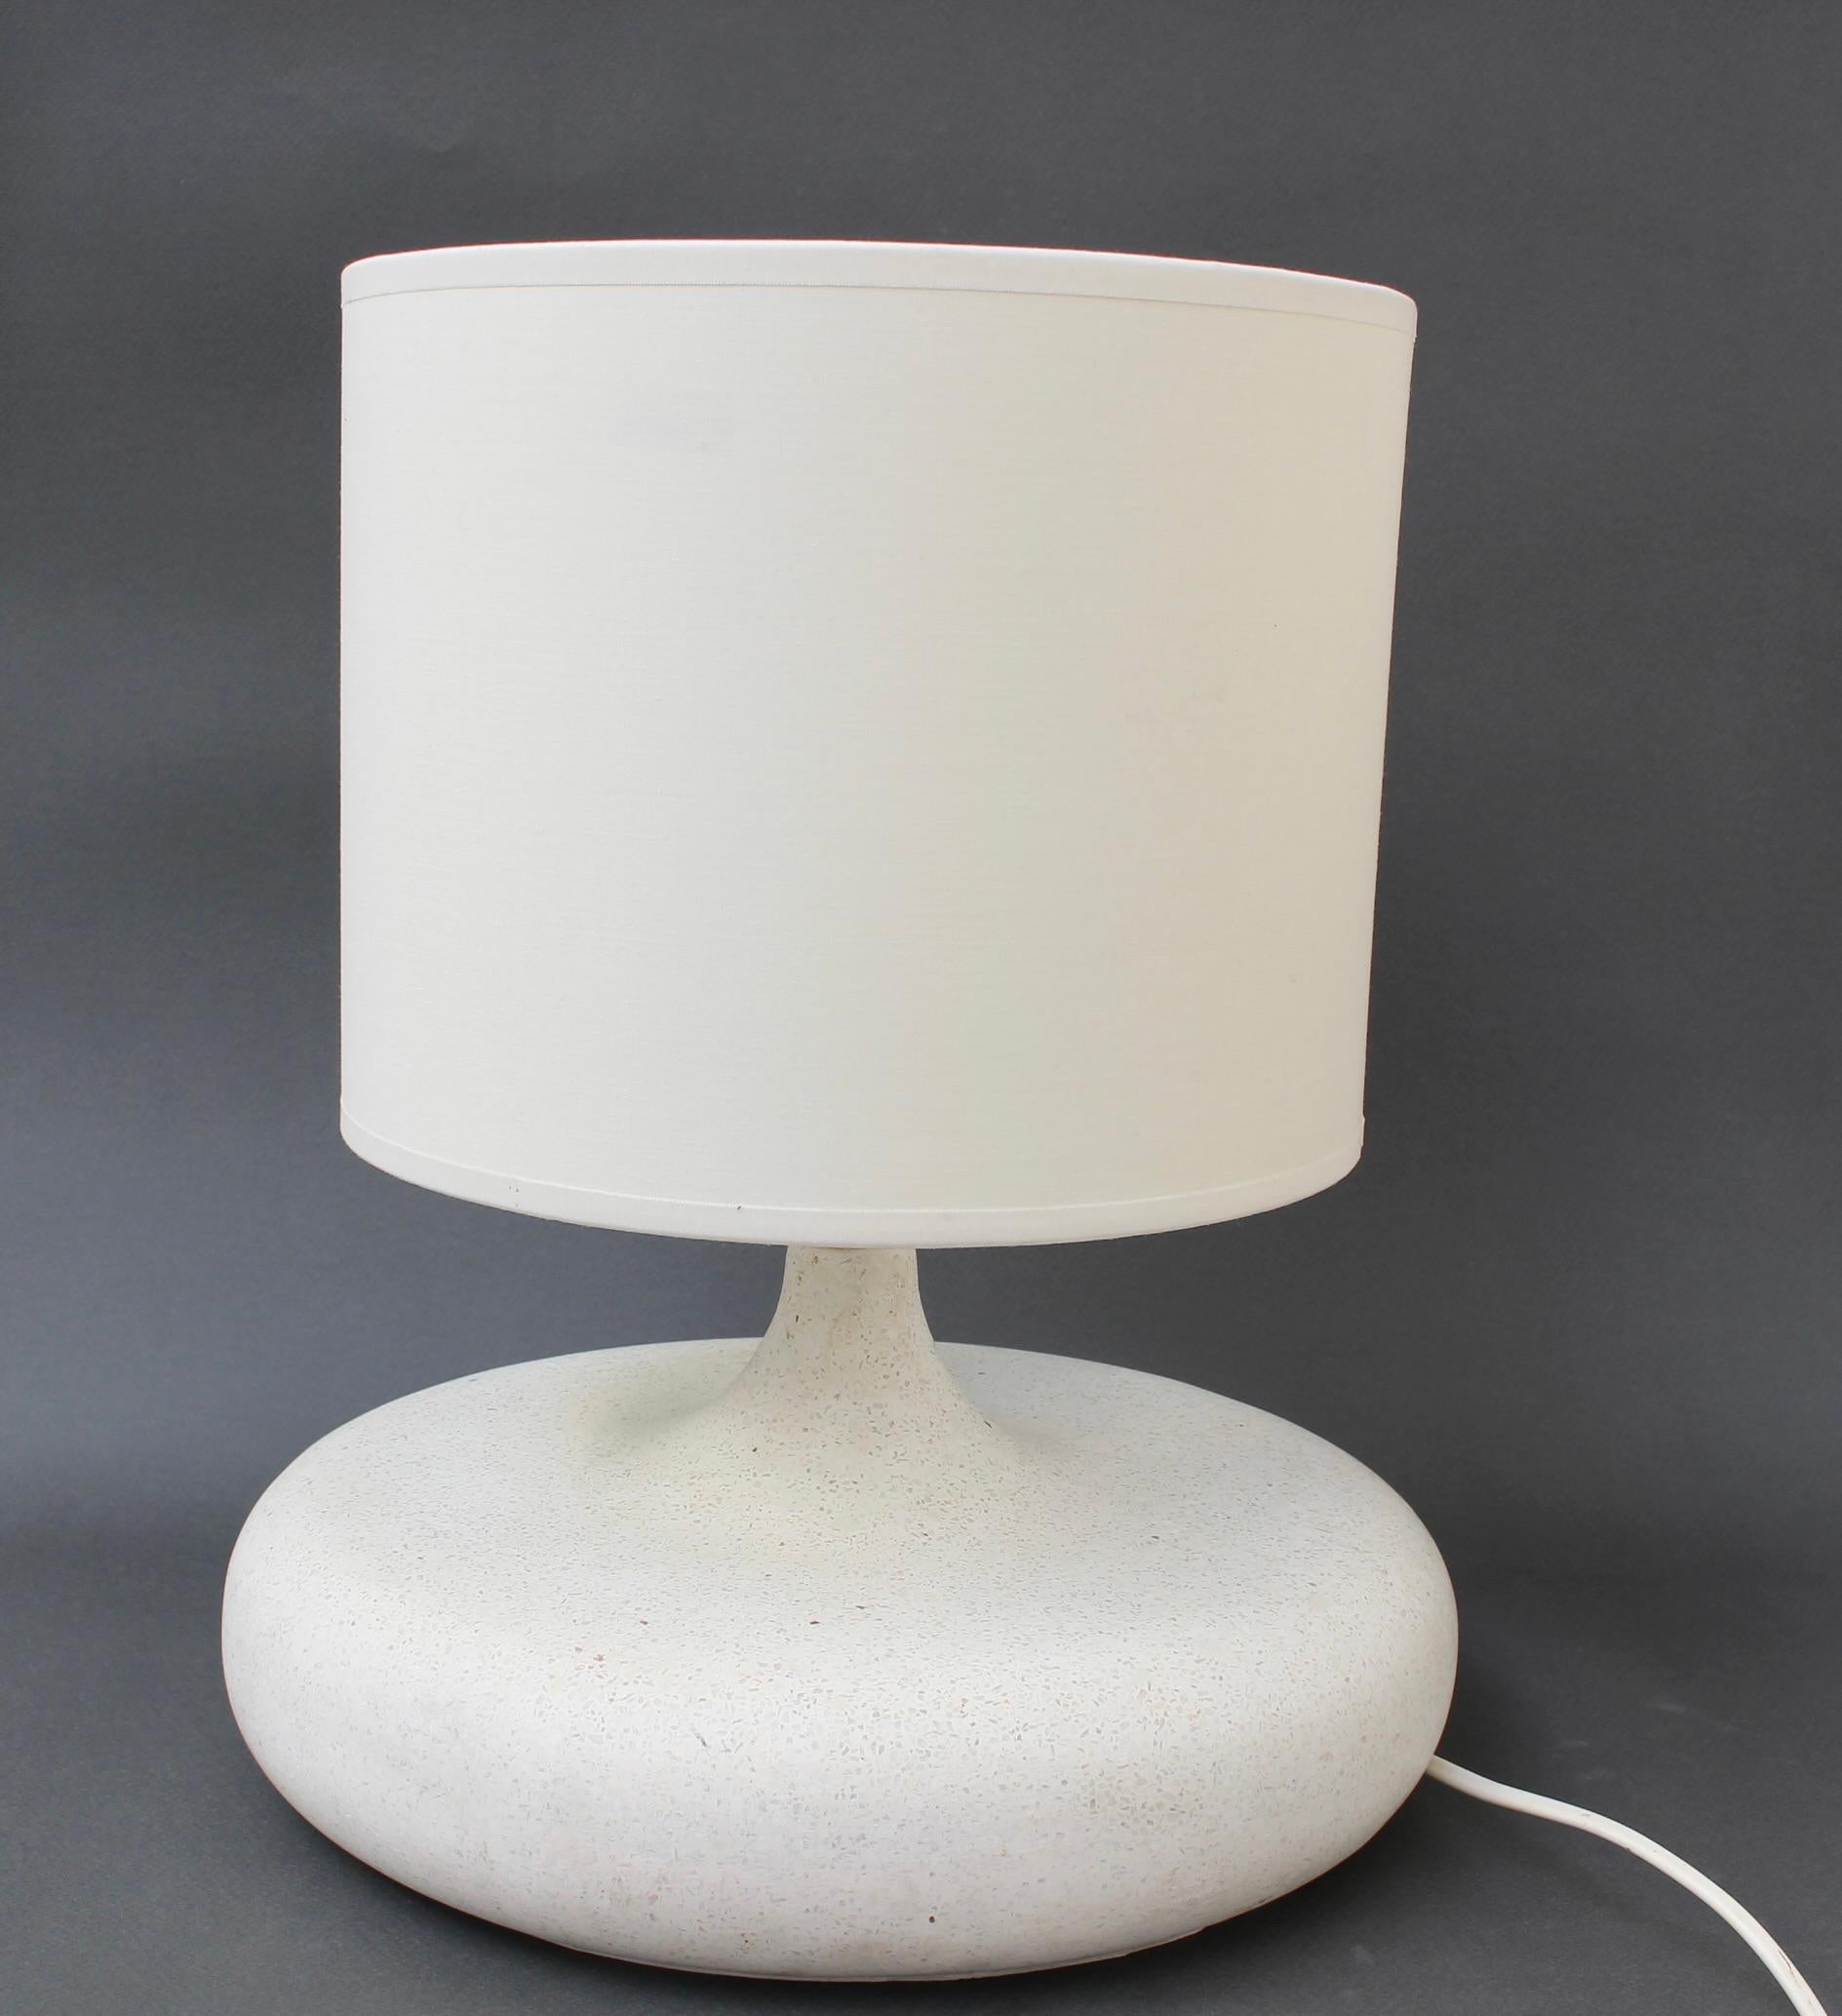 Flache Terrazzo-Tischlampe von Habitat (ca. 1990er Jahre). Diese gewichtige, optisch und haptisch sehr ansprechende Vintage-Lampe von Habitat, die für den französischen Markt hergestellt wurde, zaubert ein Lächeln auf Ihr Gesicht (Habitat wurde 1973